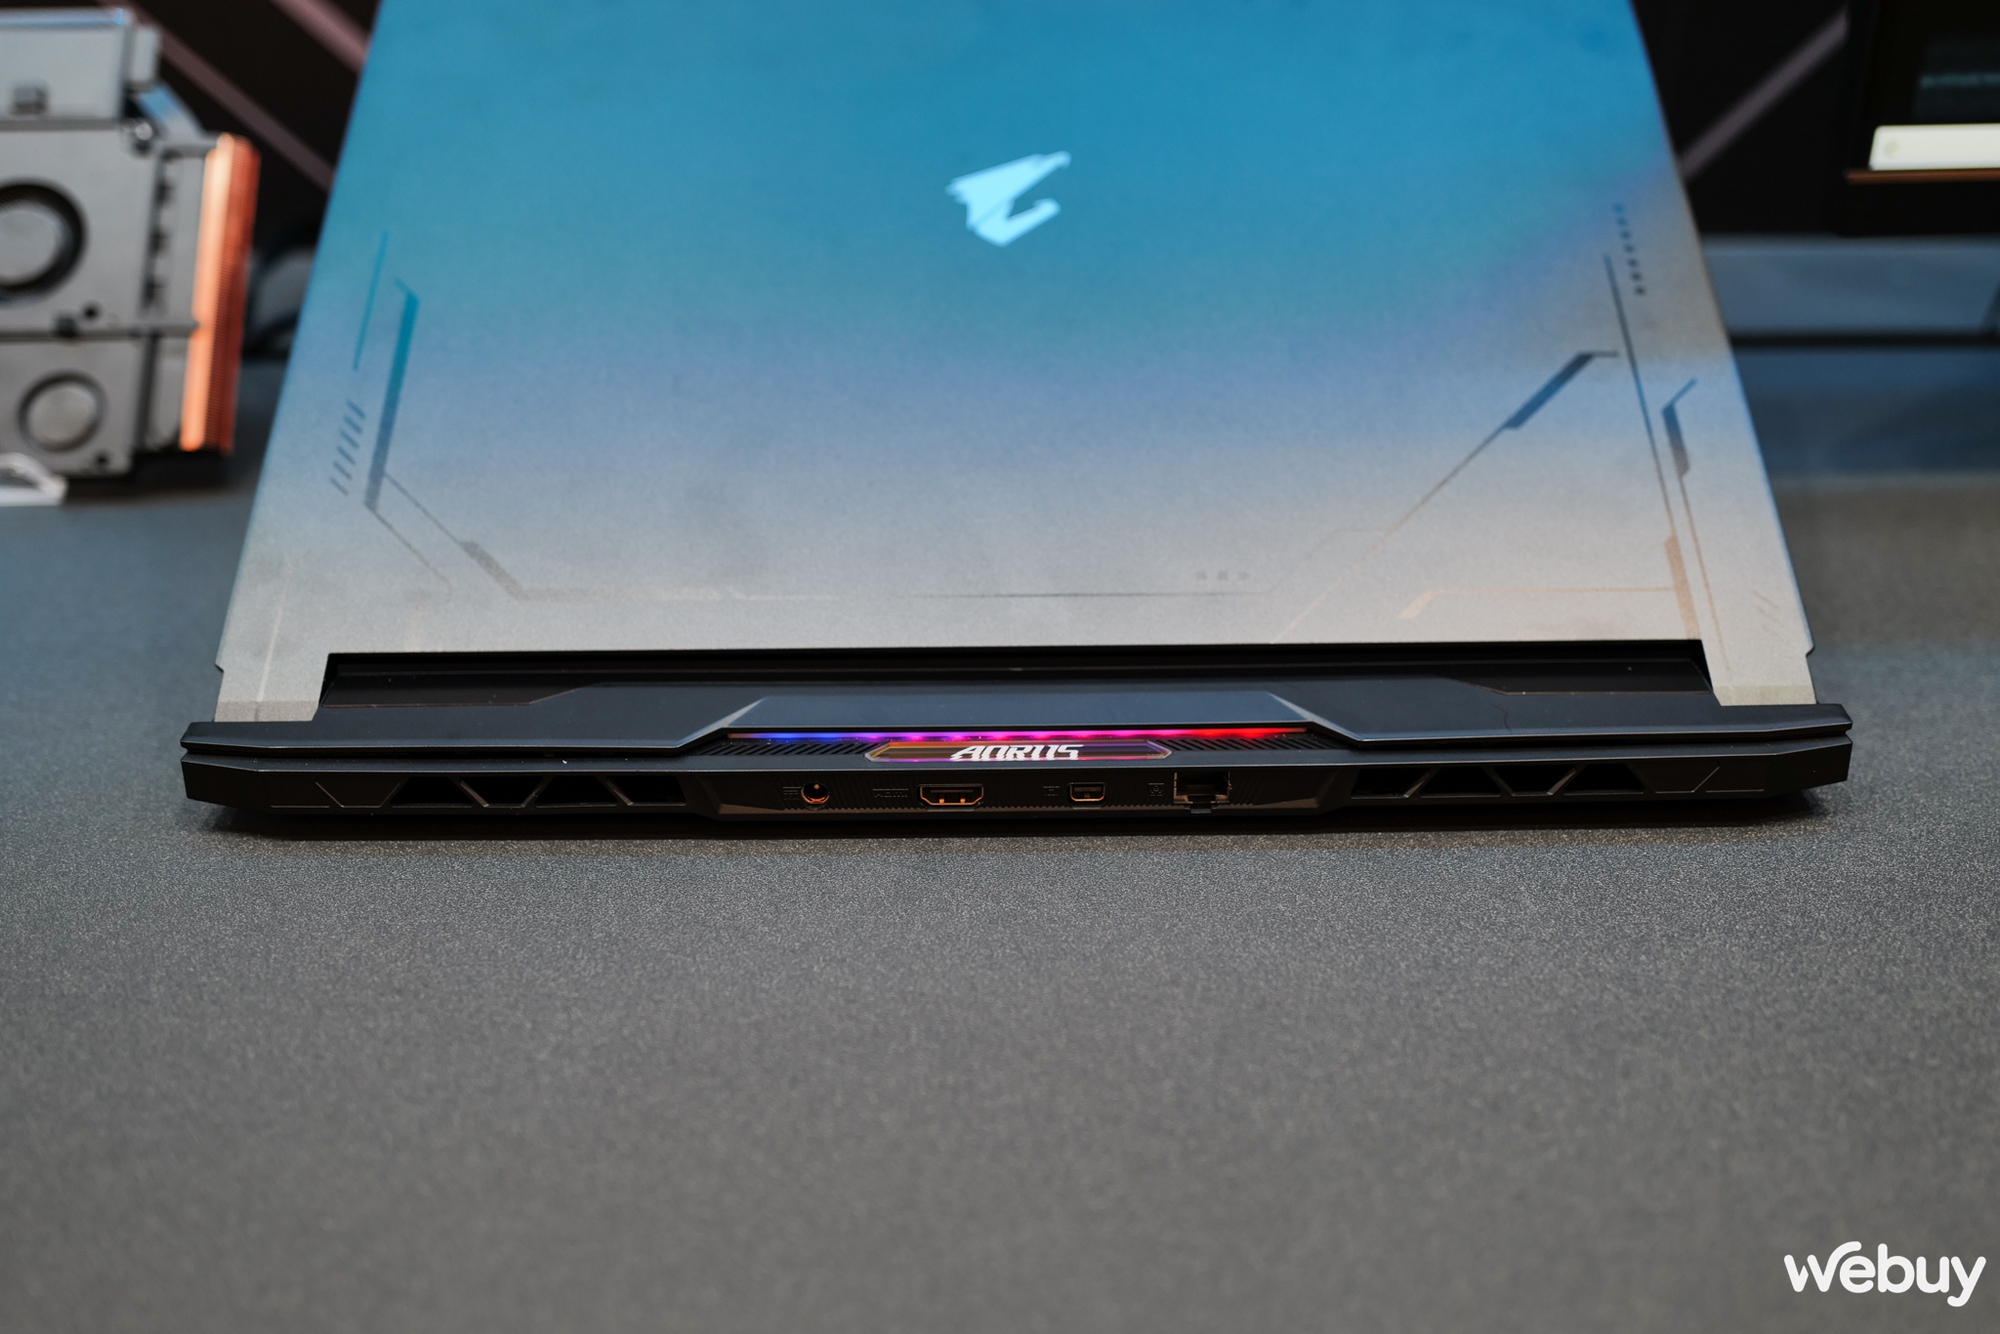 Trên tay bộ 4 laptop Gigabyte AORUS: Đa dạng về kích thước và công nghệ - Ảnh 32.